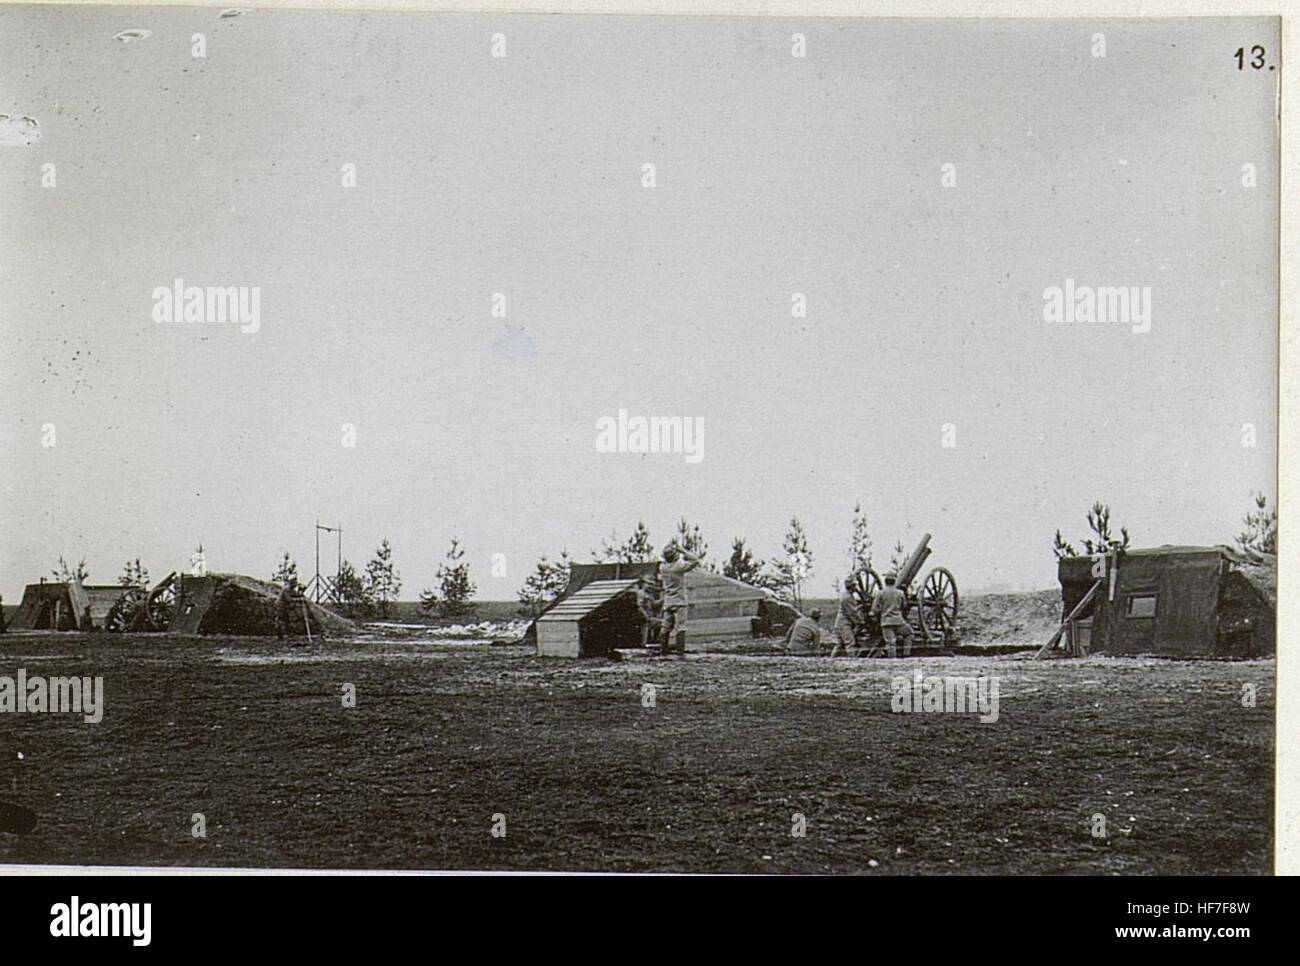 8 cm M.05 Feldkanone Mit Abgenommenen Schild als Flugzeug-Abwehrgeschütz 15720941) Stockfoto